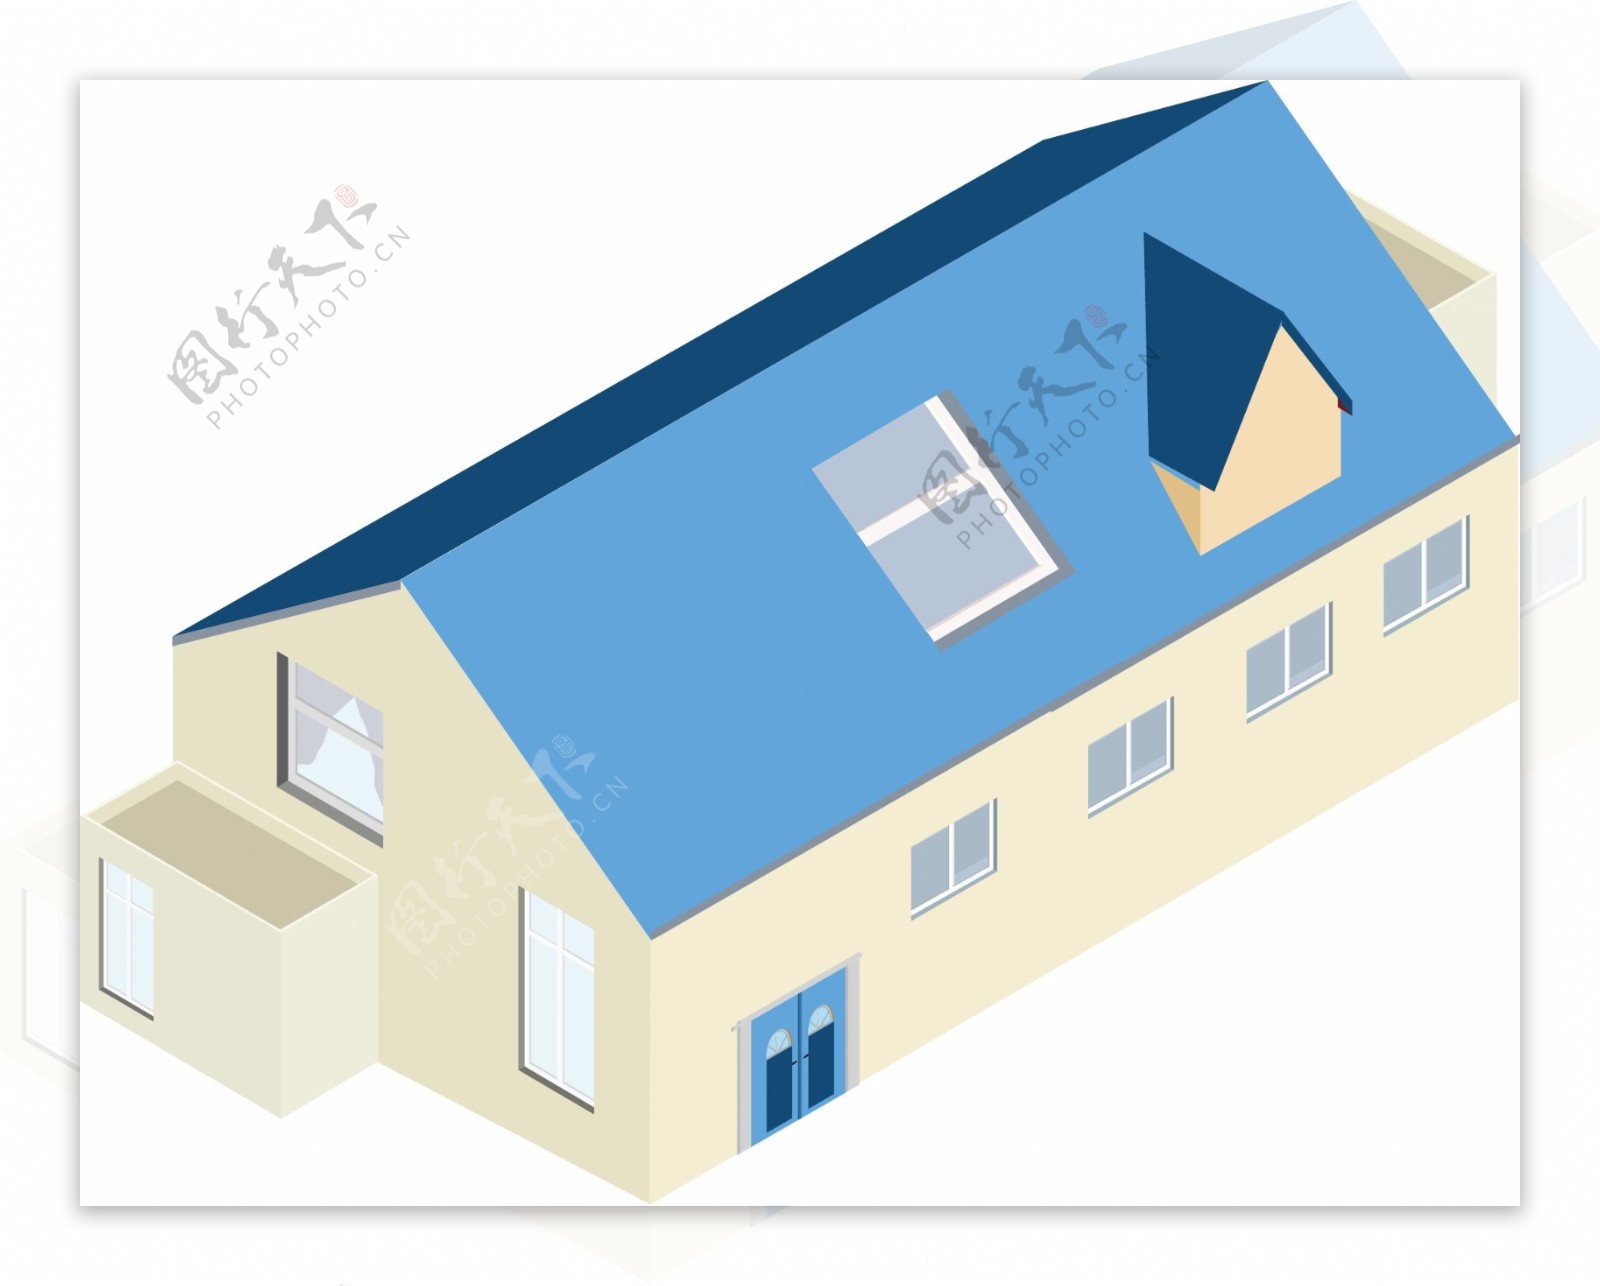 2.5D房屋建筑简单设计素材可商用